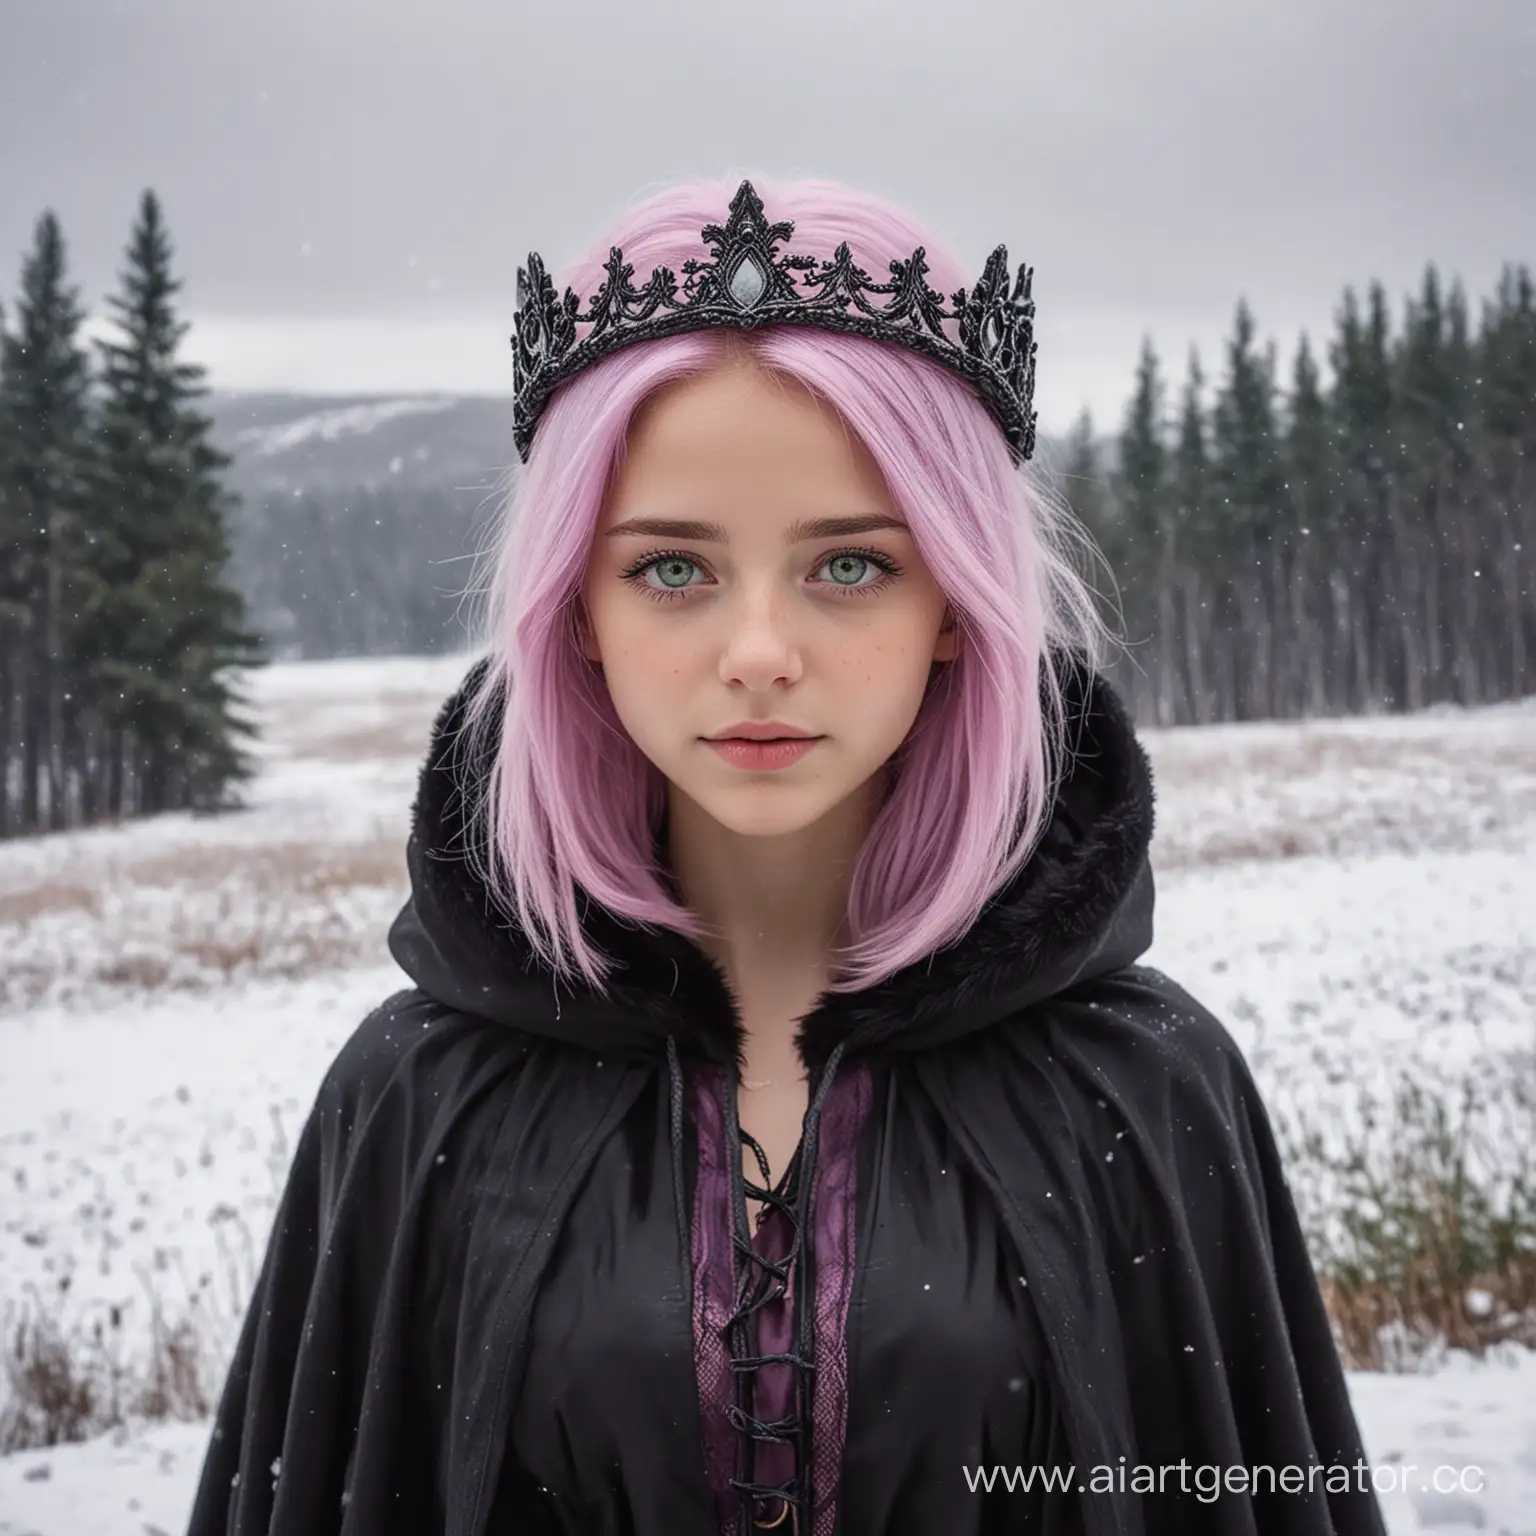 девушка, с нежно-розовыми волосами, с зелёными глазами, с фиолетовой короной на голове, с тёмным плащом с мехом на плечах, вокруг снежные поля, еловые леса вдалеке, пасмурное небо